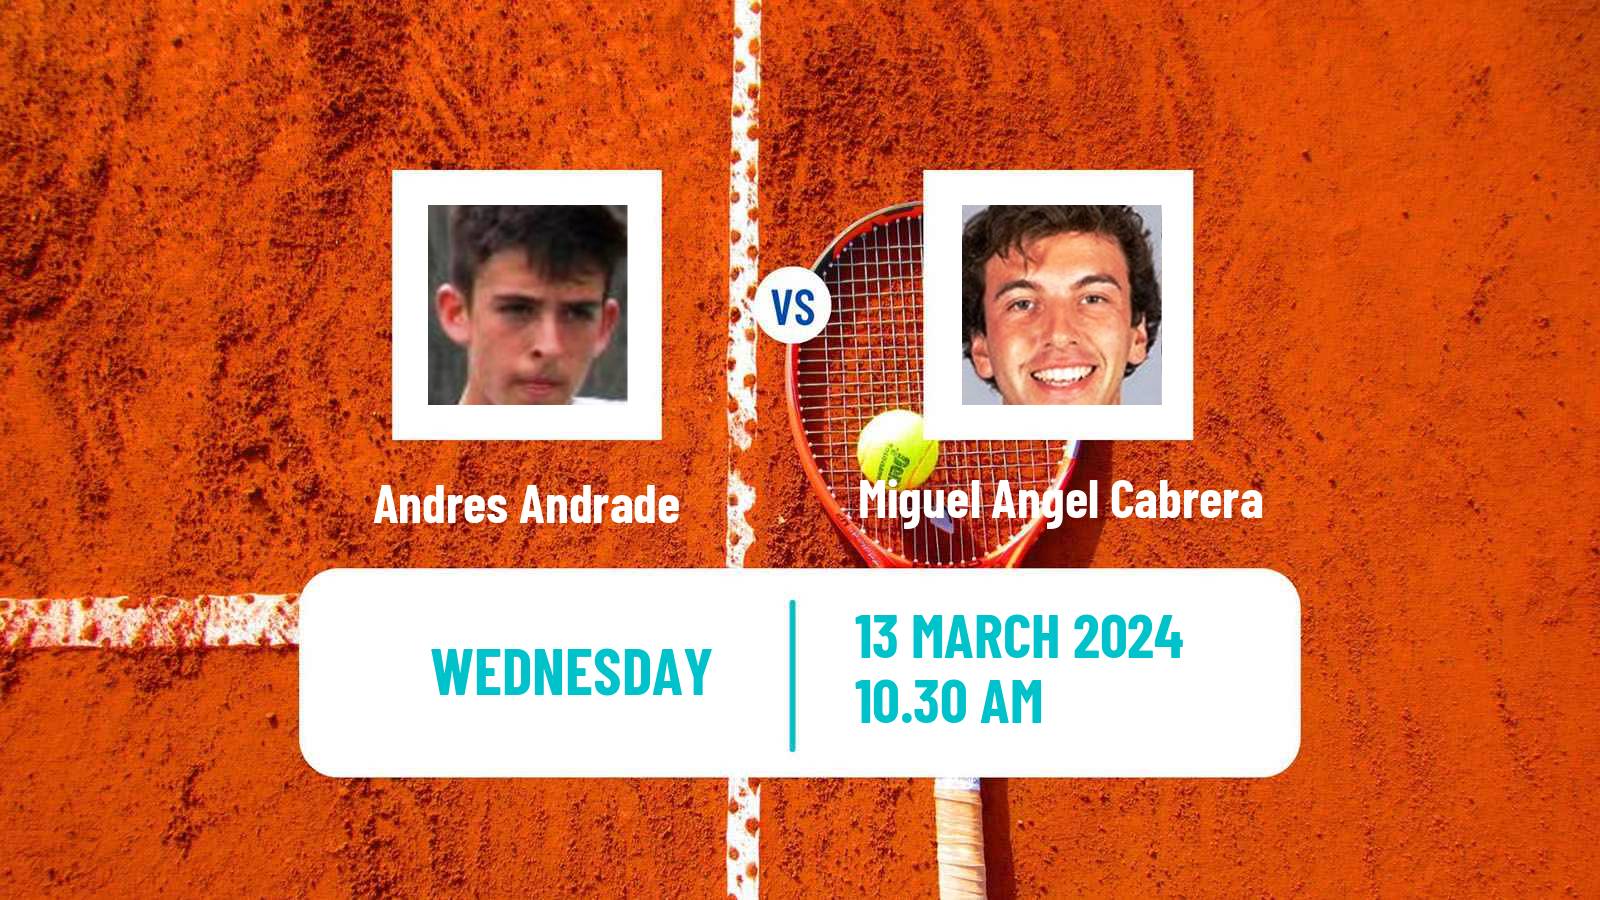 Tennis ITF M25 Santo Domingo 2 Men Andres Andrade - Miguel Angel Cabrera